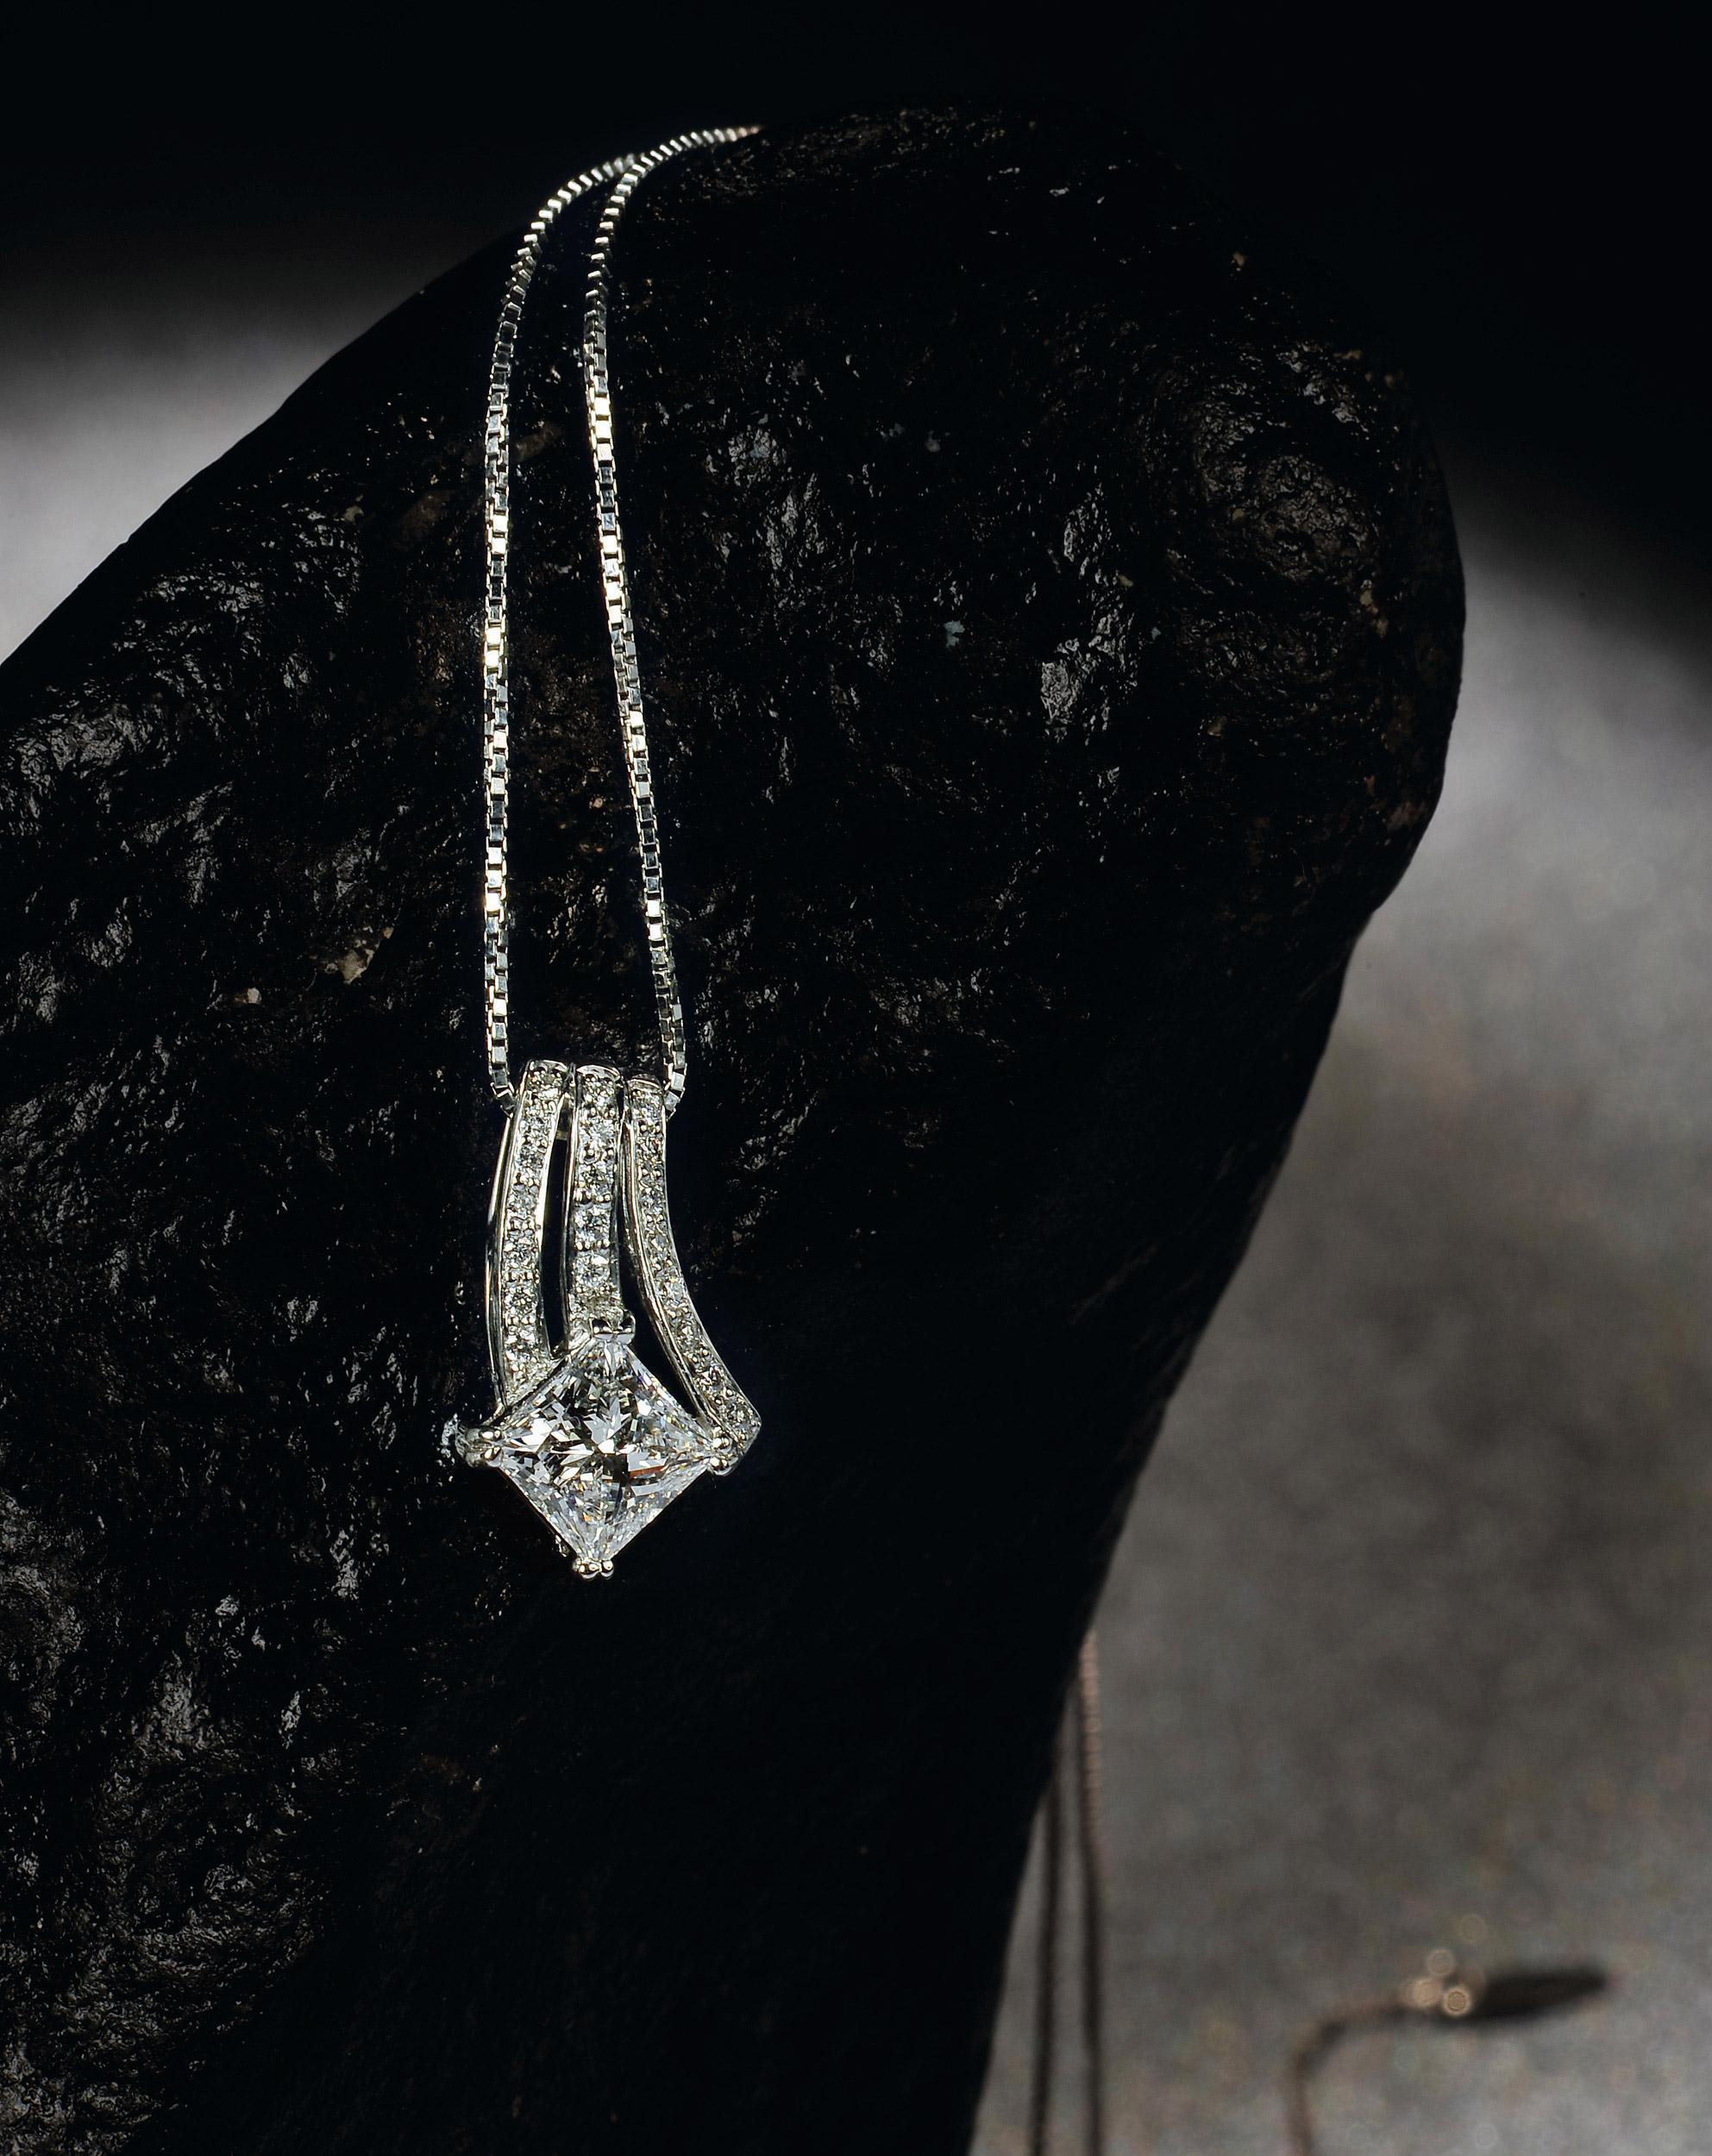 高清图|蒂芙尼铂金镶嵌圆形南洋珍珠，定制切割蓝宝石及混合切割钻石项链项链图片1|腕表之家-珠宝